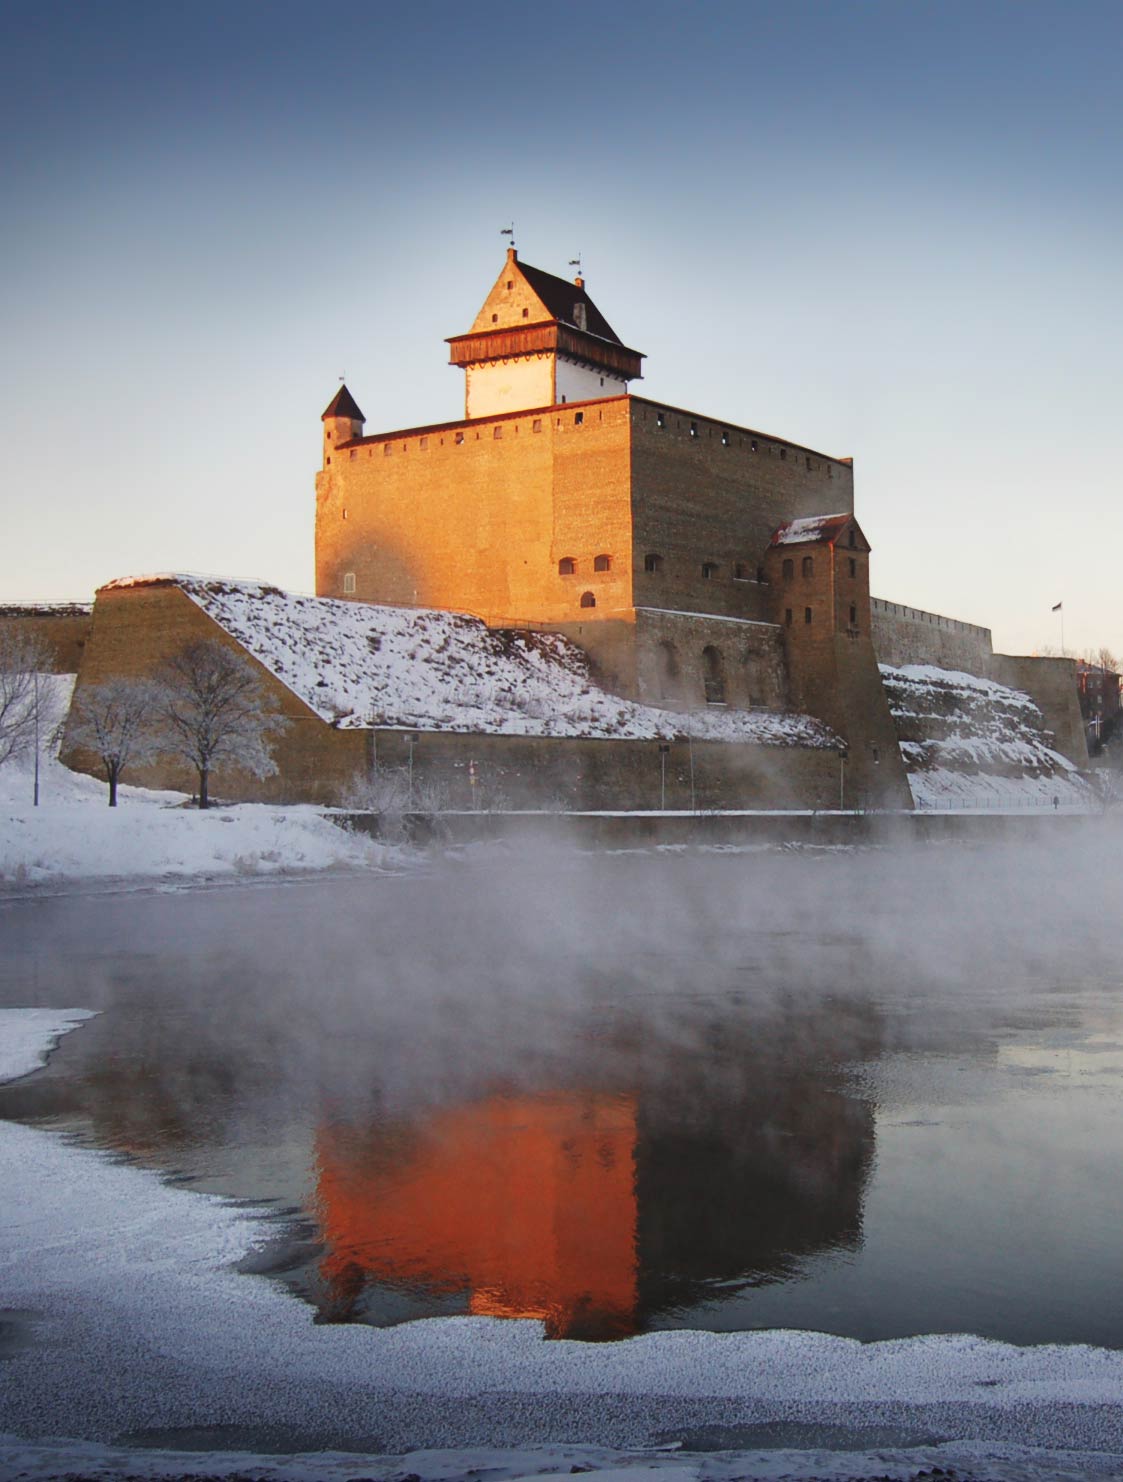 The Hermann Castle in Narva, Estonia